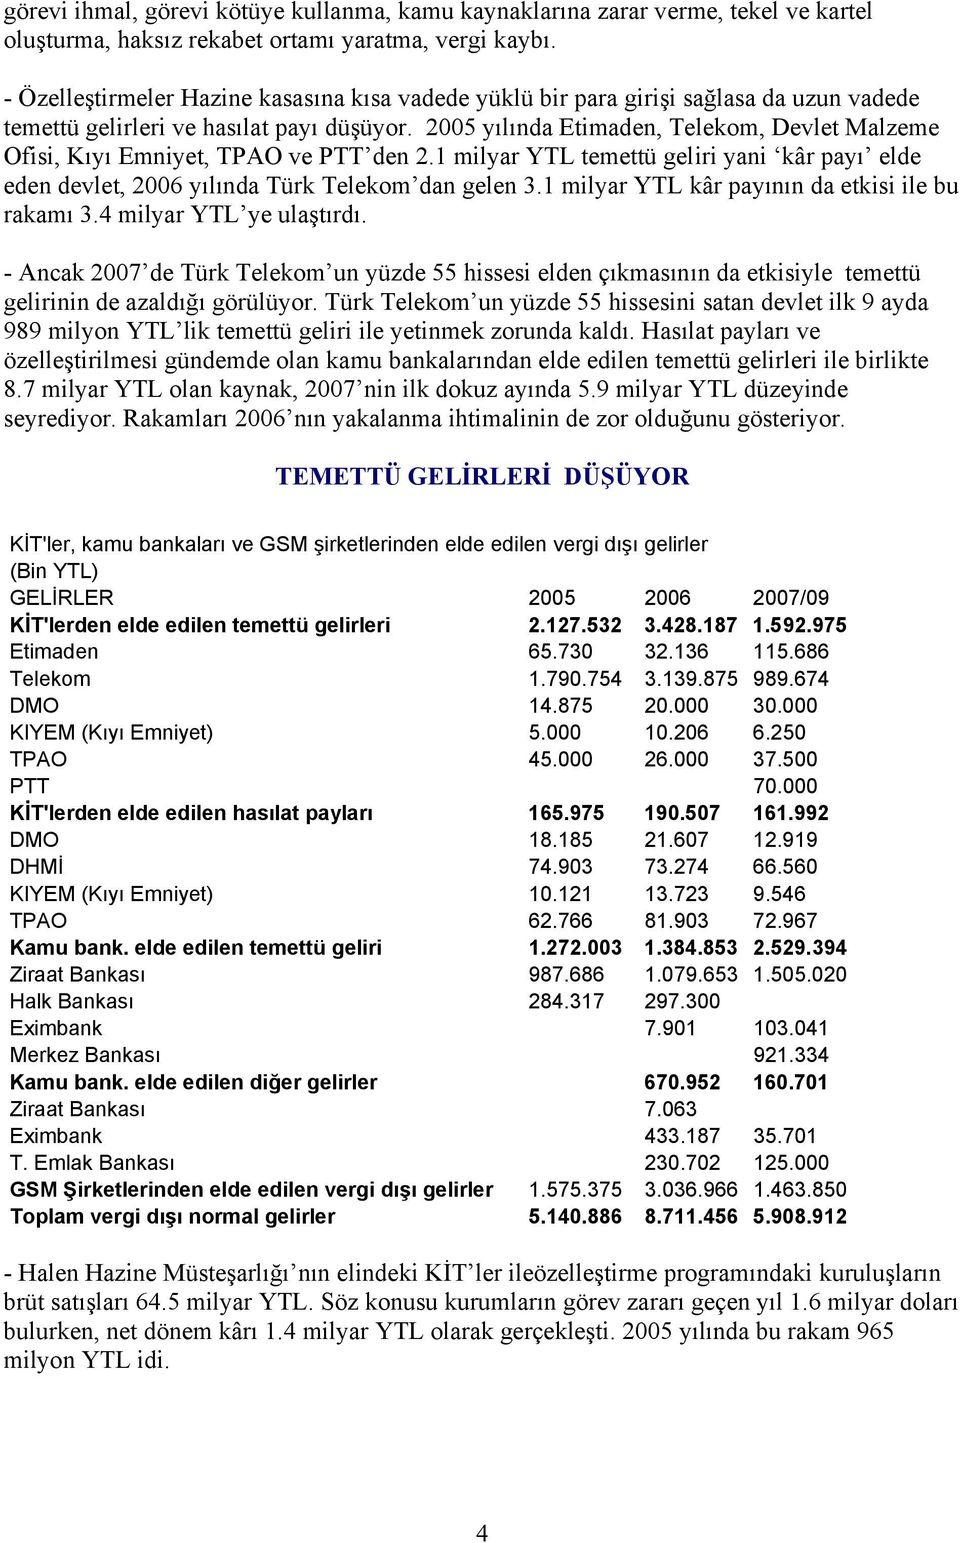 2005 yılında Etimaden, Telekom, Devlet Malzeme Ofisi, Kıyı Emniyet, TPAO ve PTT den 2.1 milyar YTL temettü geliri yani kâr payı elde eden devlet, 2006 yılında Türk Telekom dan gelen 3.